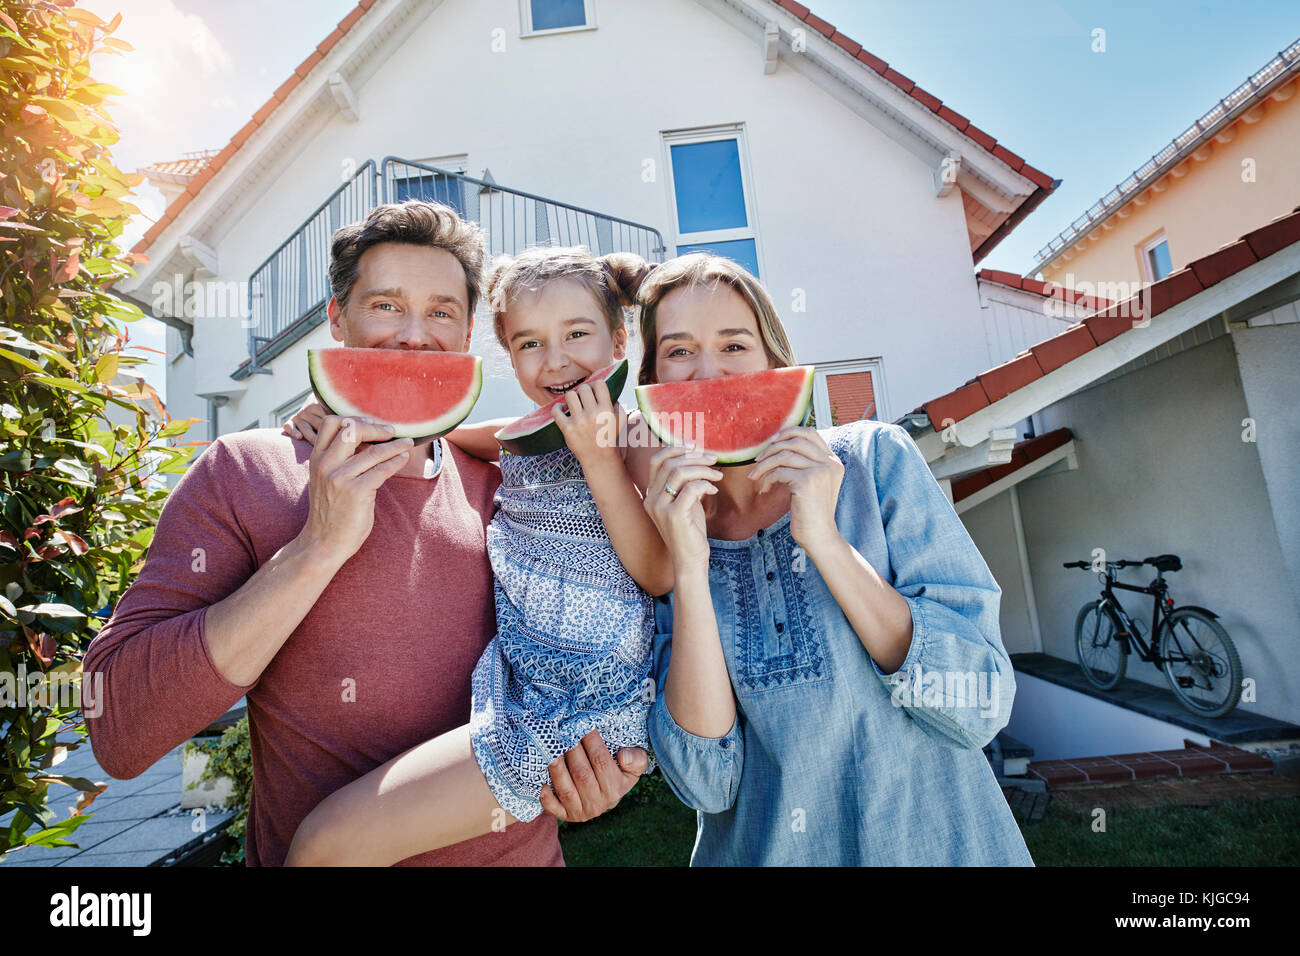 Portrait de famille heureuse avec des tranches de melon d'eau en face de leur maison Banque D'Images